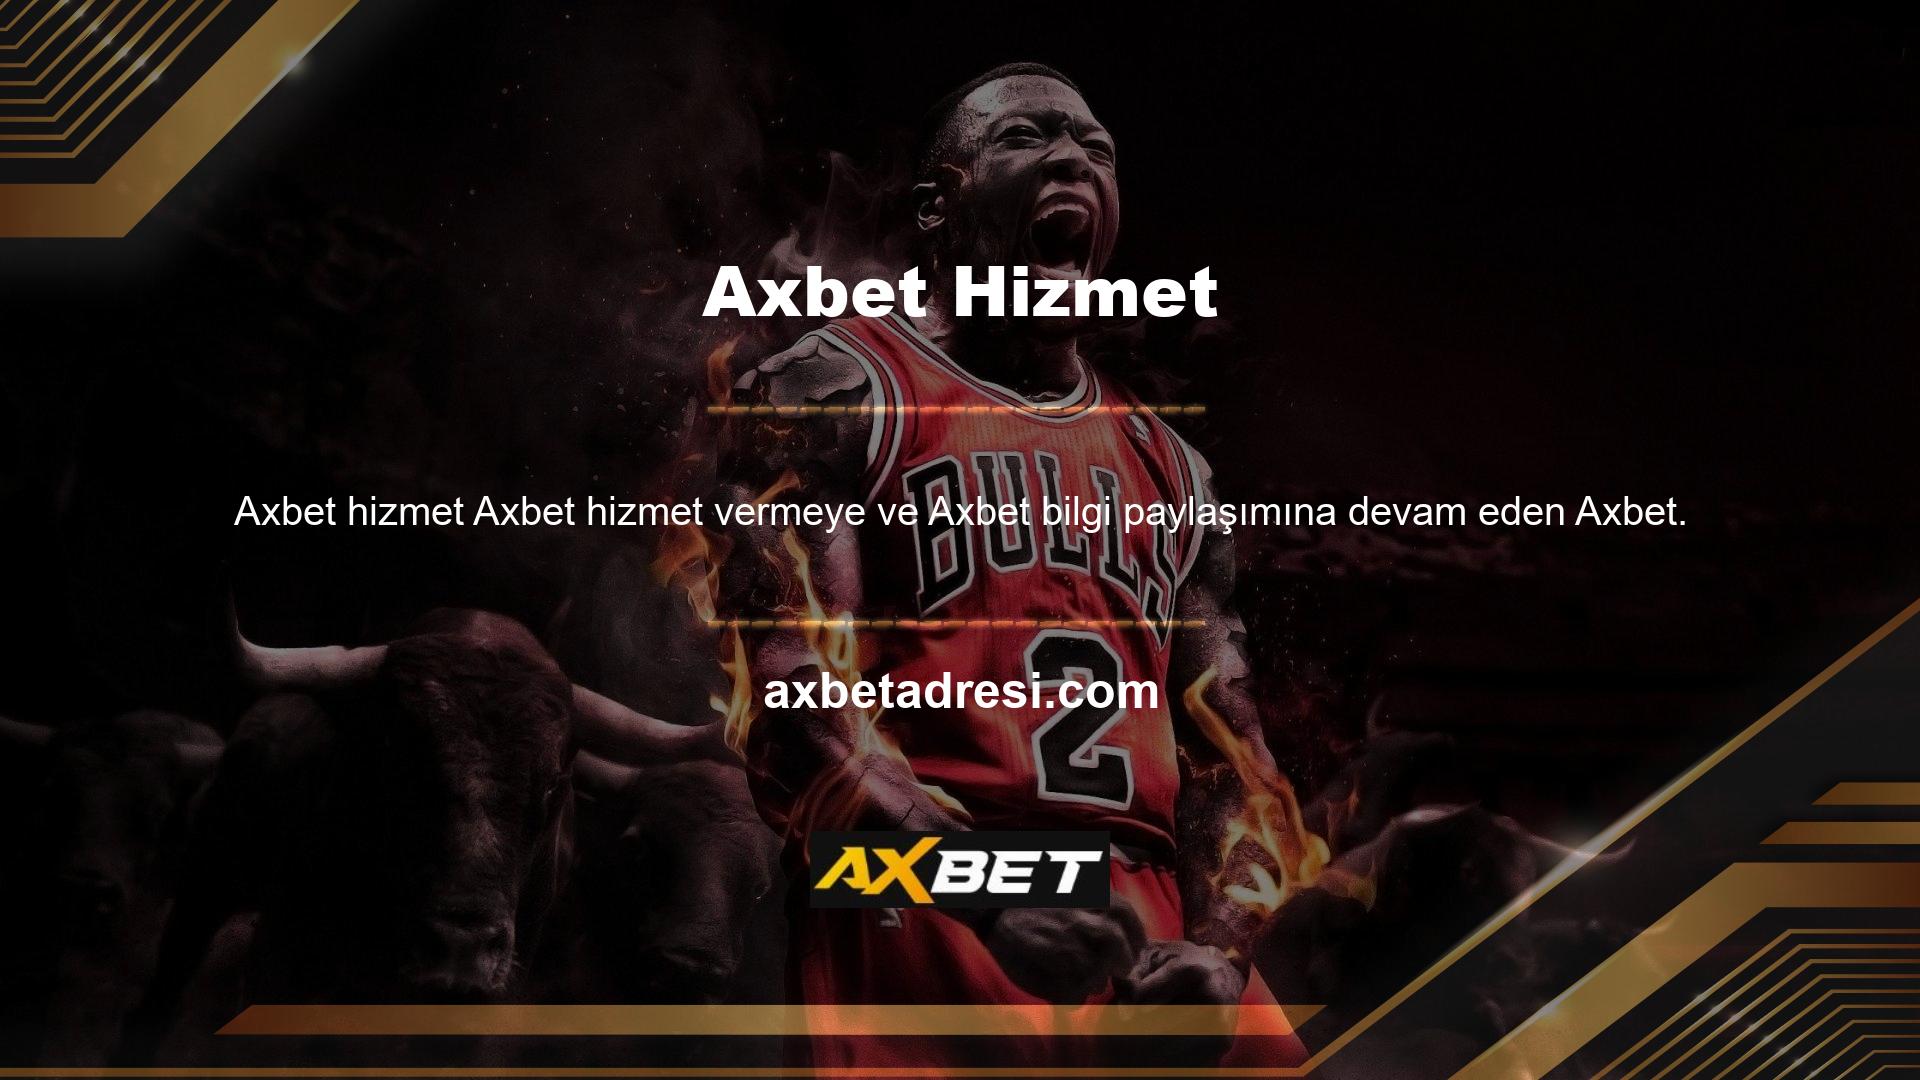 com resmi web sitesi aynı zamanda Axbet ait en güncel giriş linklerini de içermektedir